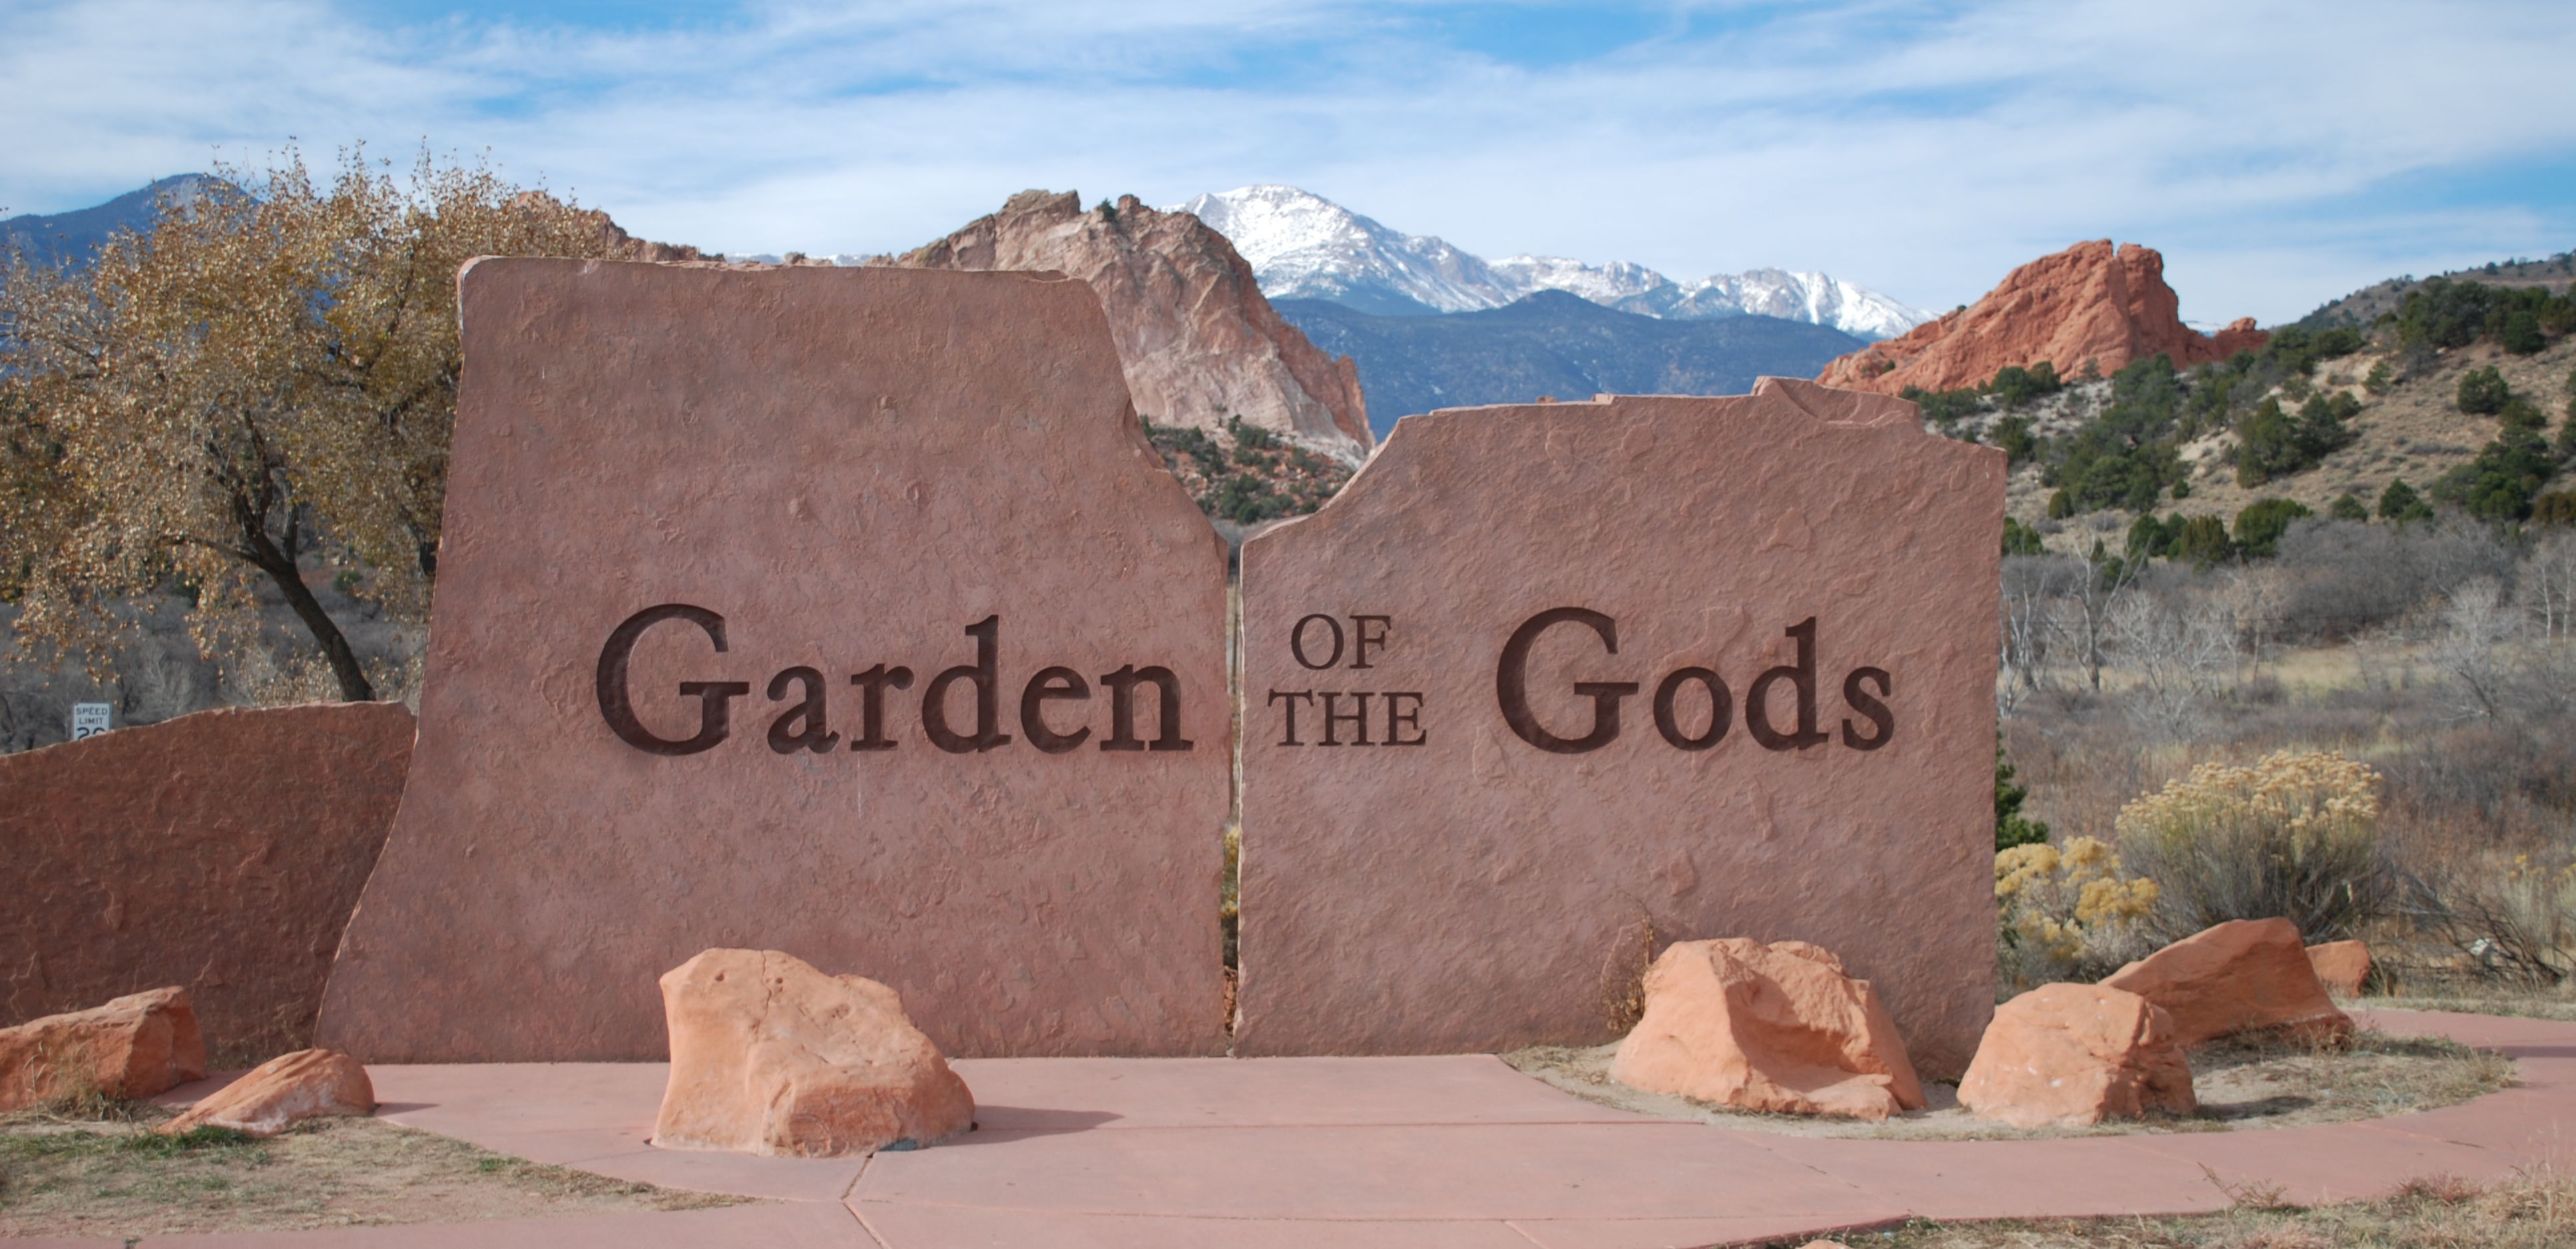 Entrance to Garden of the Gods in Colorado Springs